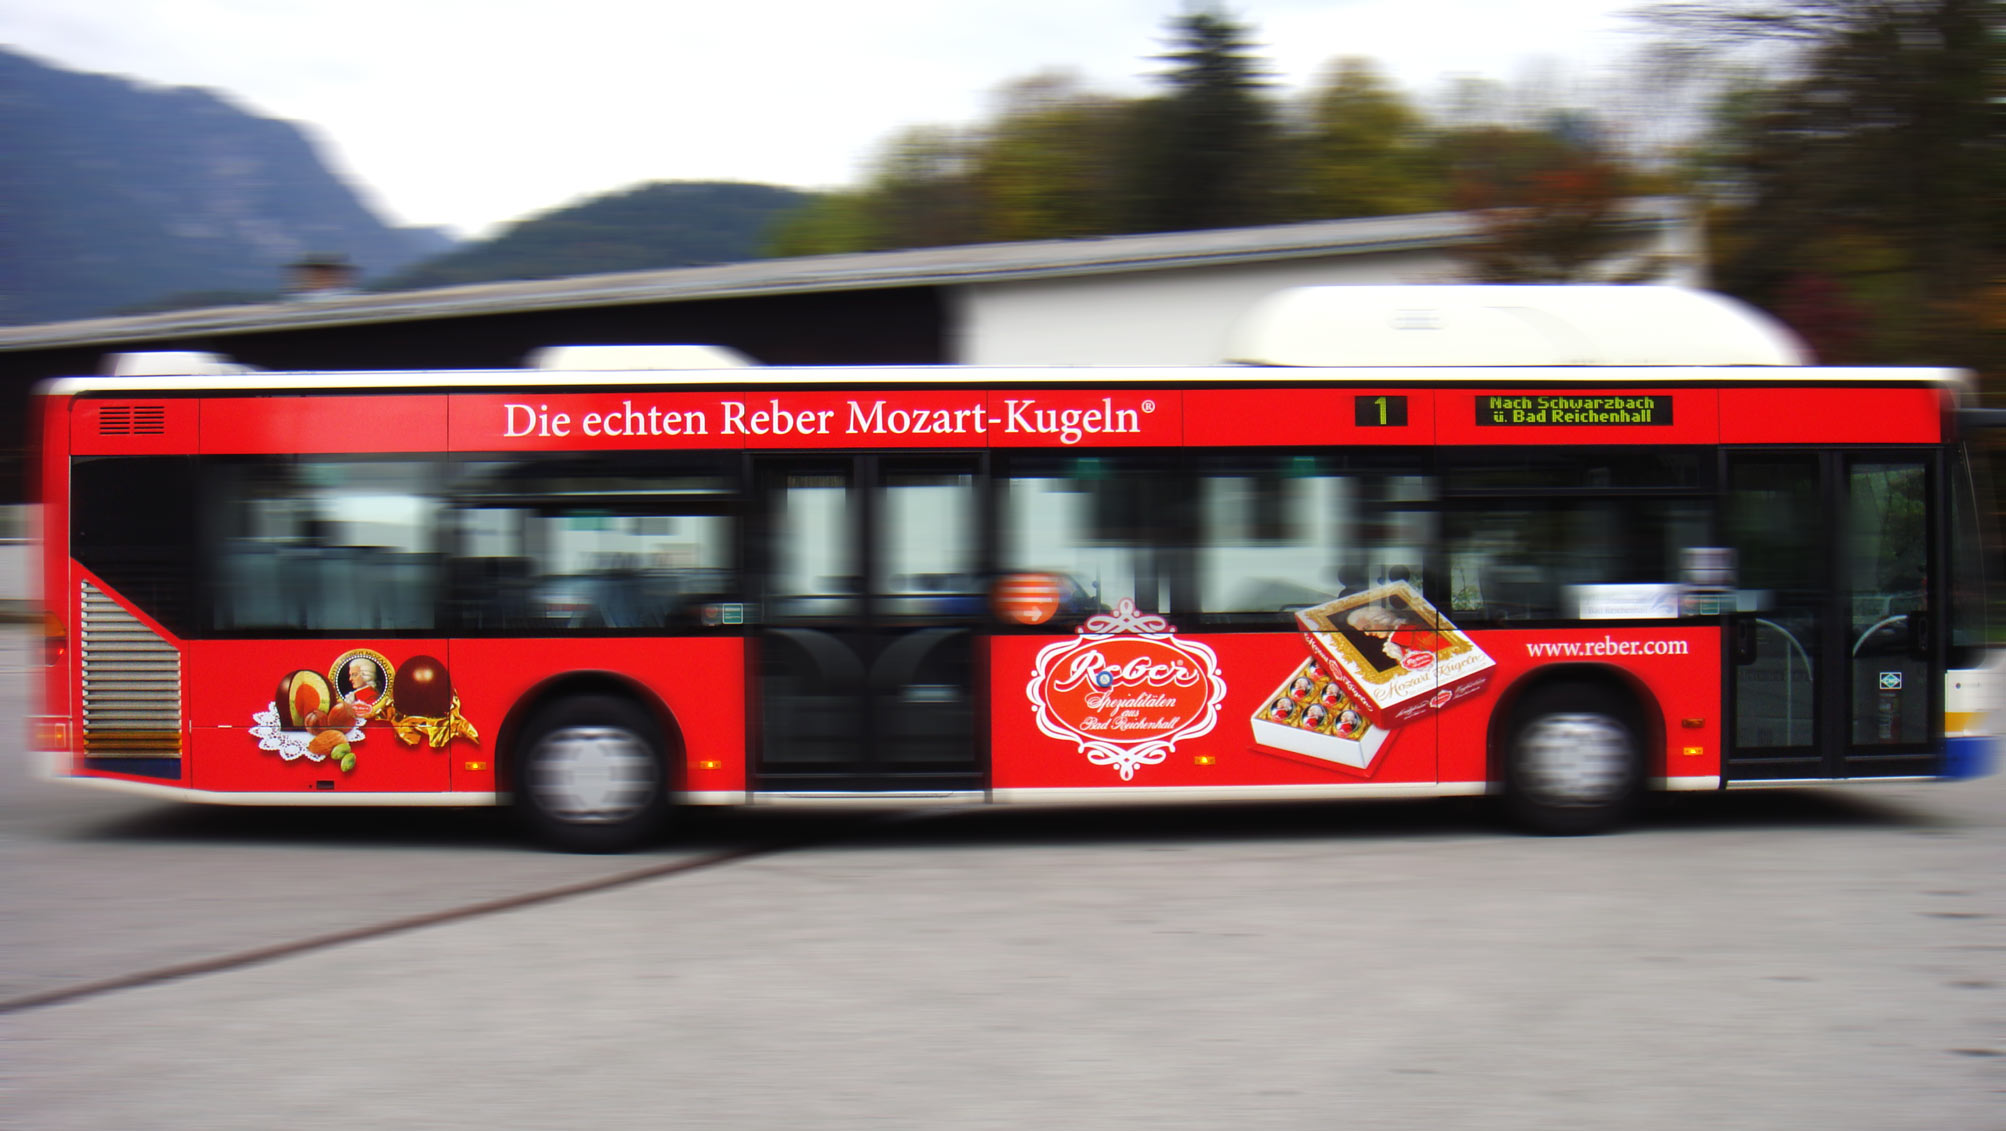 Buswerbung - Reber Mozartkugeln - Einstiegseite